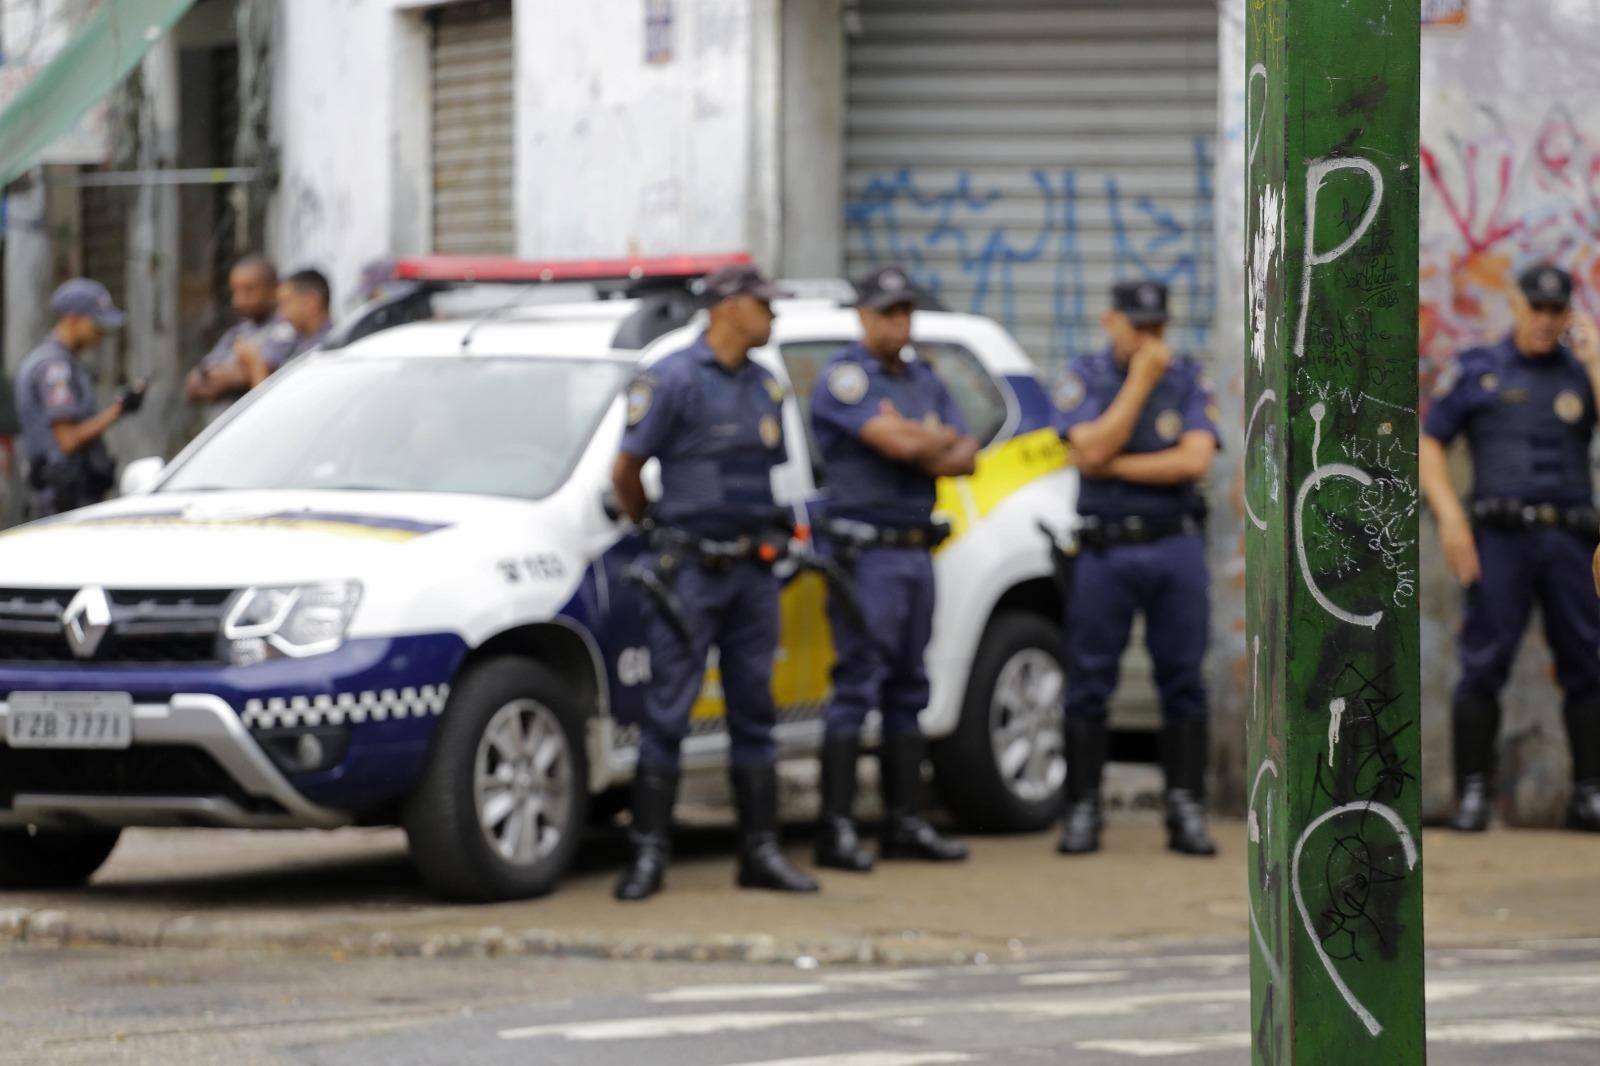 Poste e visto pichado com as siglas da facção criminosa PCC (Primeiro Comando da Capital) na região conhecida como cracolândia, no bairro da Luz, no centro de São Paulo